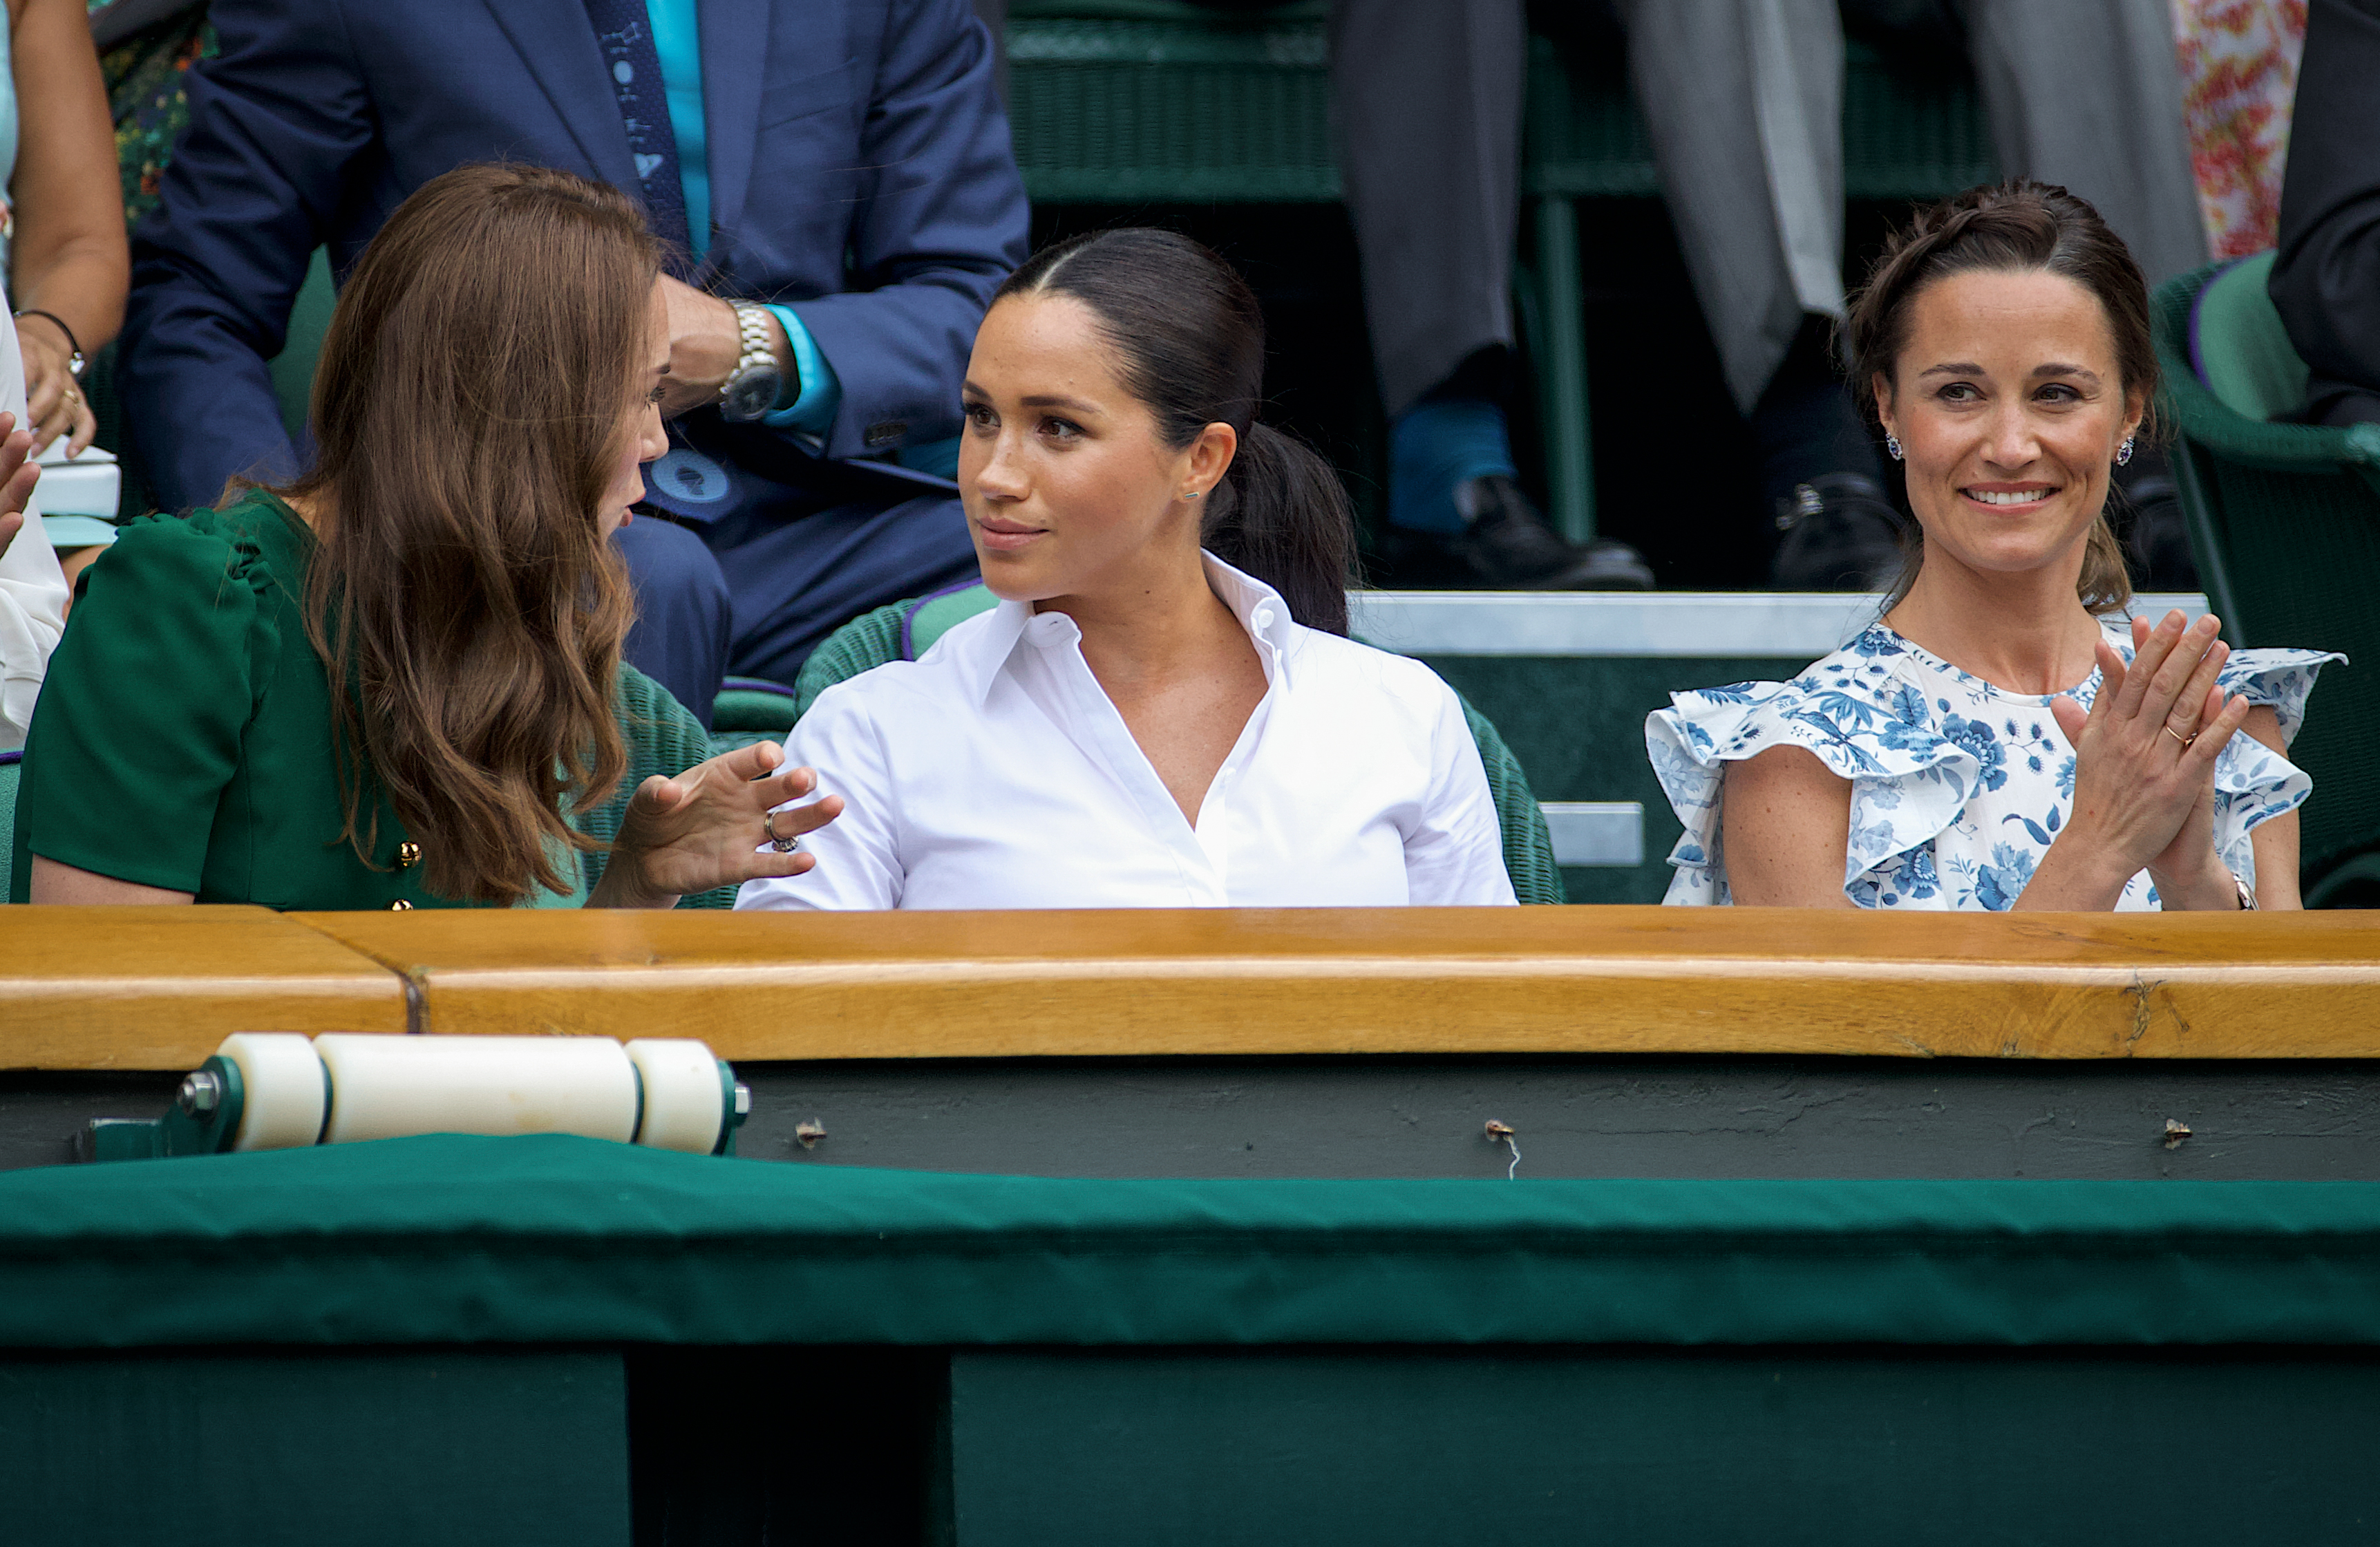 La princesse Catherine, Meghan Markle et Pippa Middleton à Wimbledon 2019 au All England Lawn Tennis and Croquet Club le 13 juillet 2019 à Londres, en Angleterre | Source : Getty Images